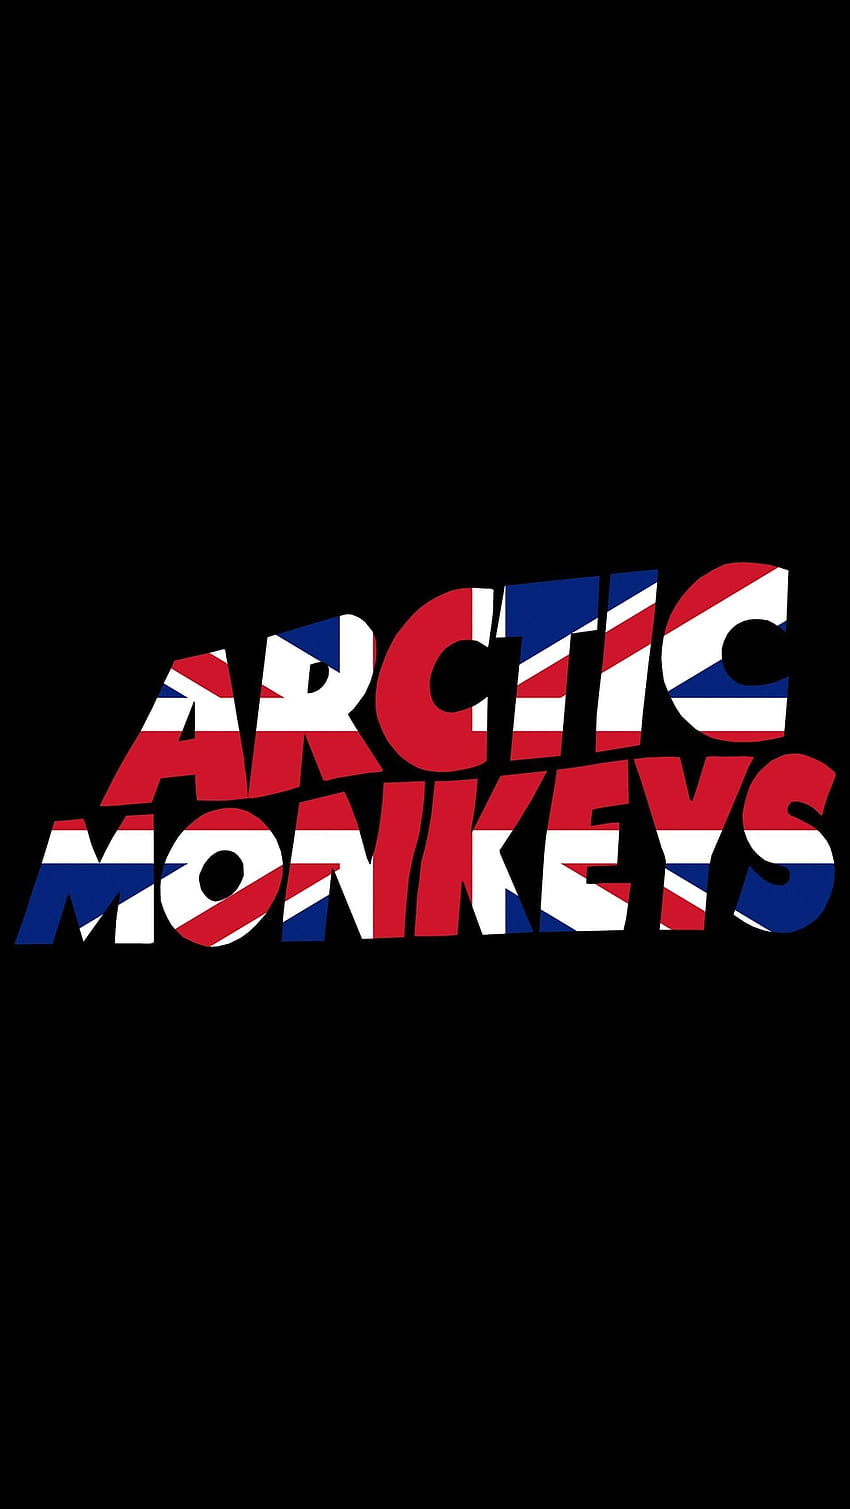 10 Top Arctic Monkeys Iphone FULL For PC Backgrounds, penjaga pintu wallpaper ponsel HD